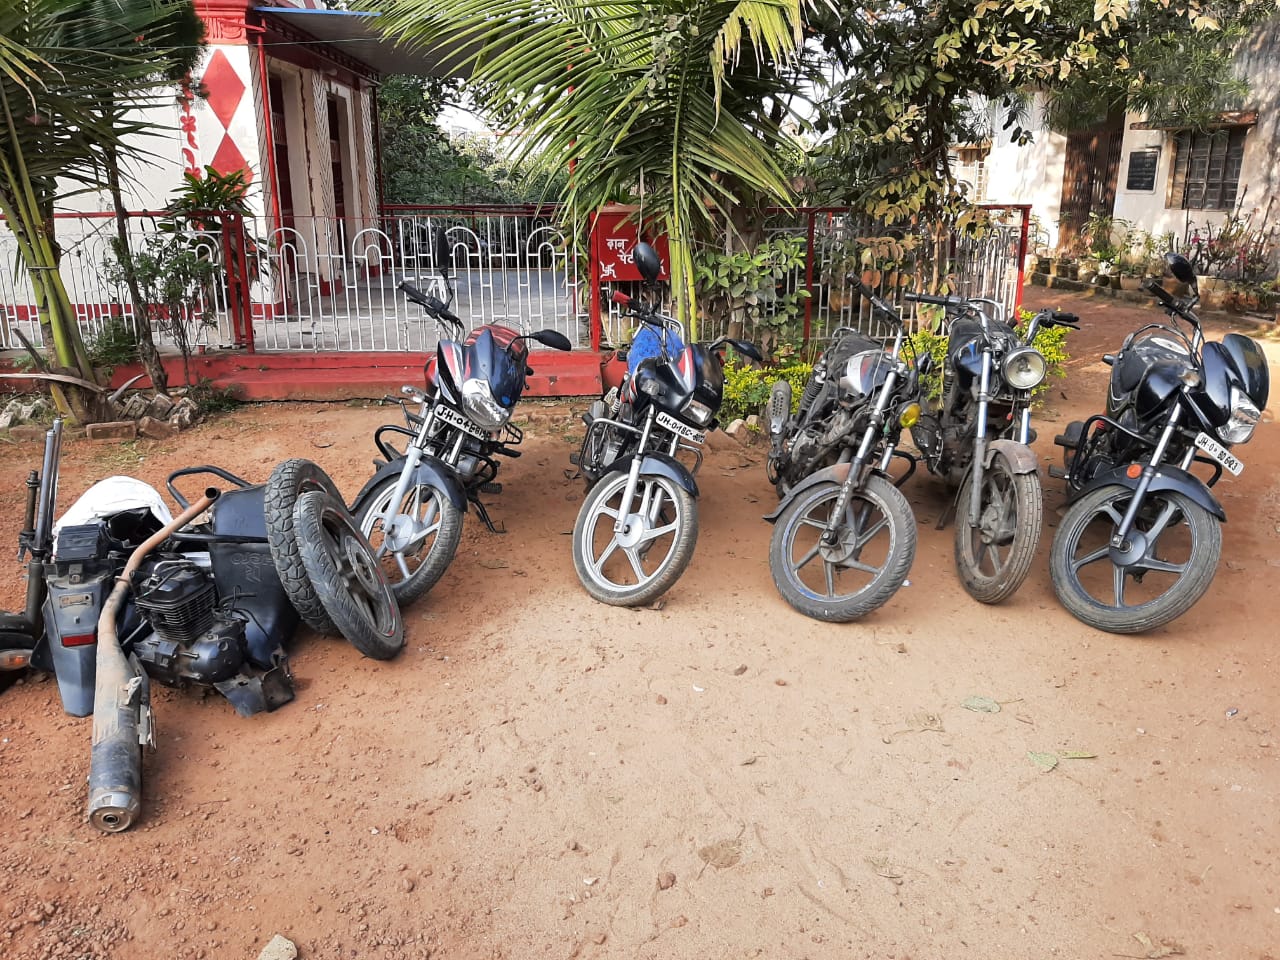 Bike thief gang in Ranchi